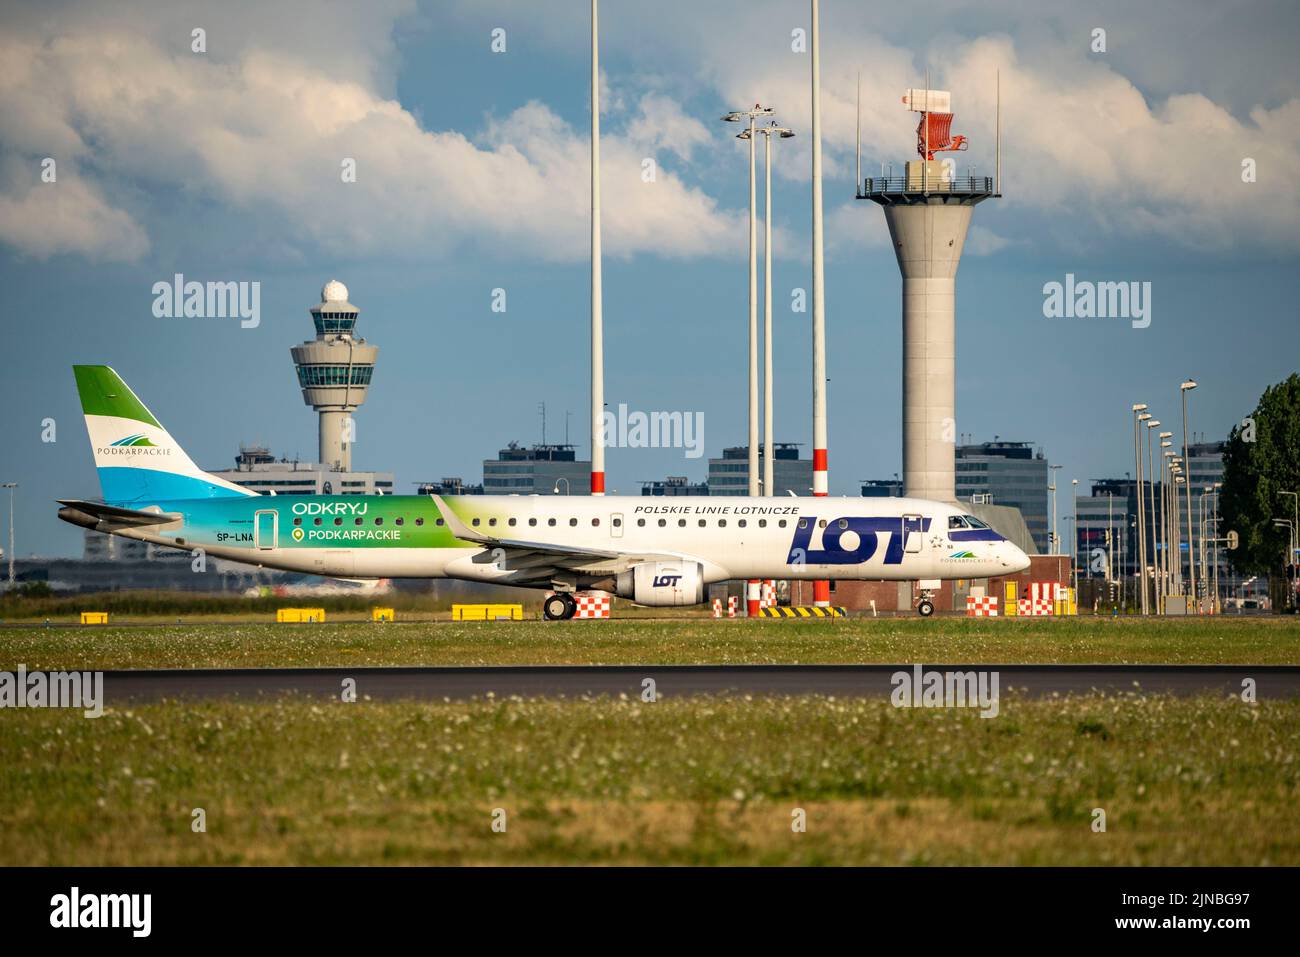 Amsterdam Shiphol Airport, Polderbaan, eine von 6 Start- und Landebahnen, Flugsicherung im Turm, Rollweg zum Start, SP-LNA, LOT - Polish Airlines Embraer ERJ-195 Stockfoto